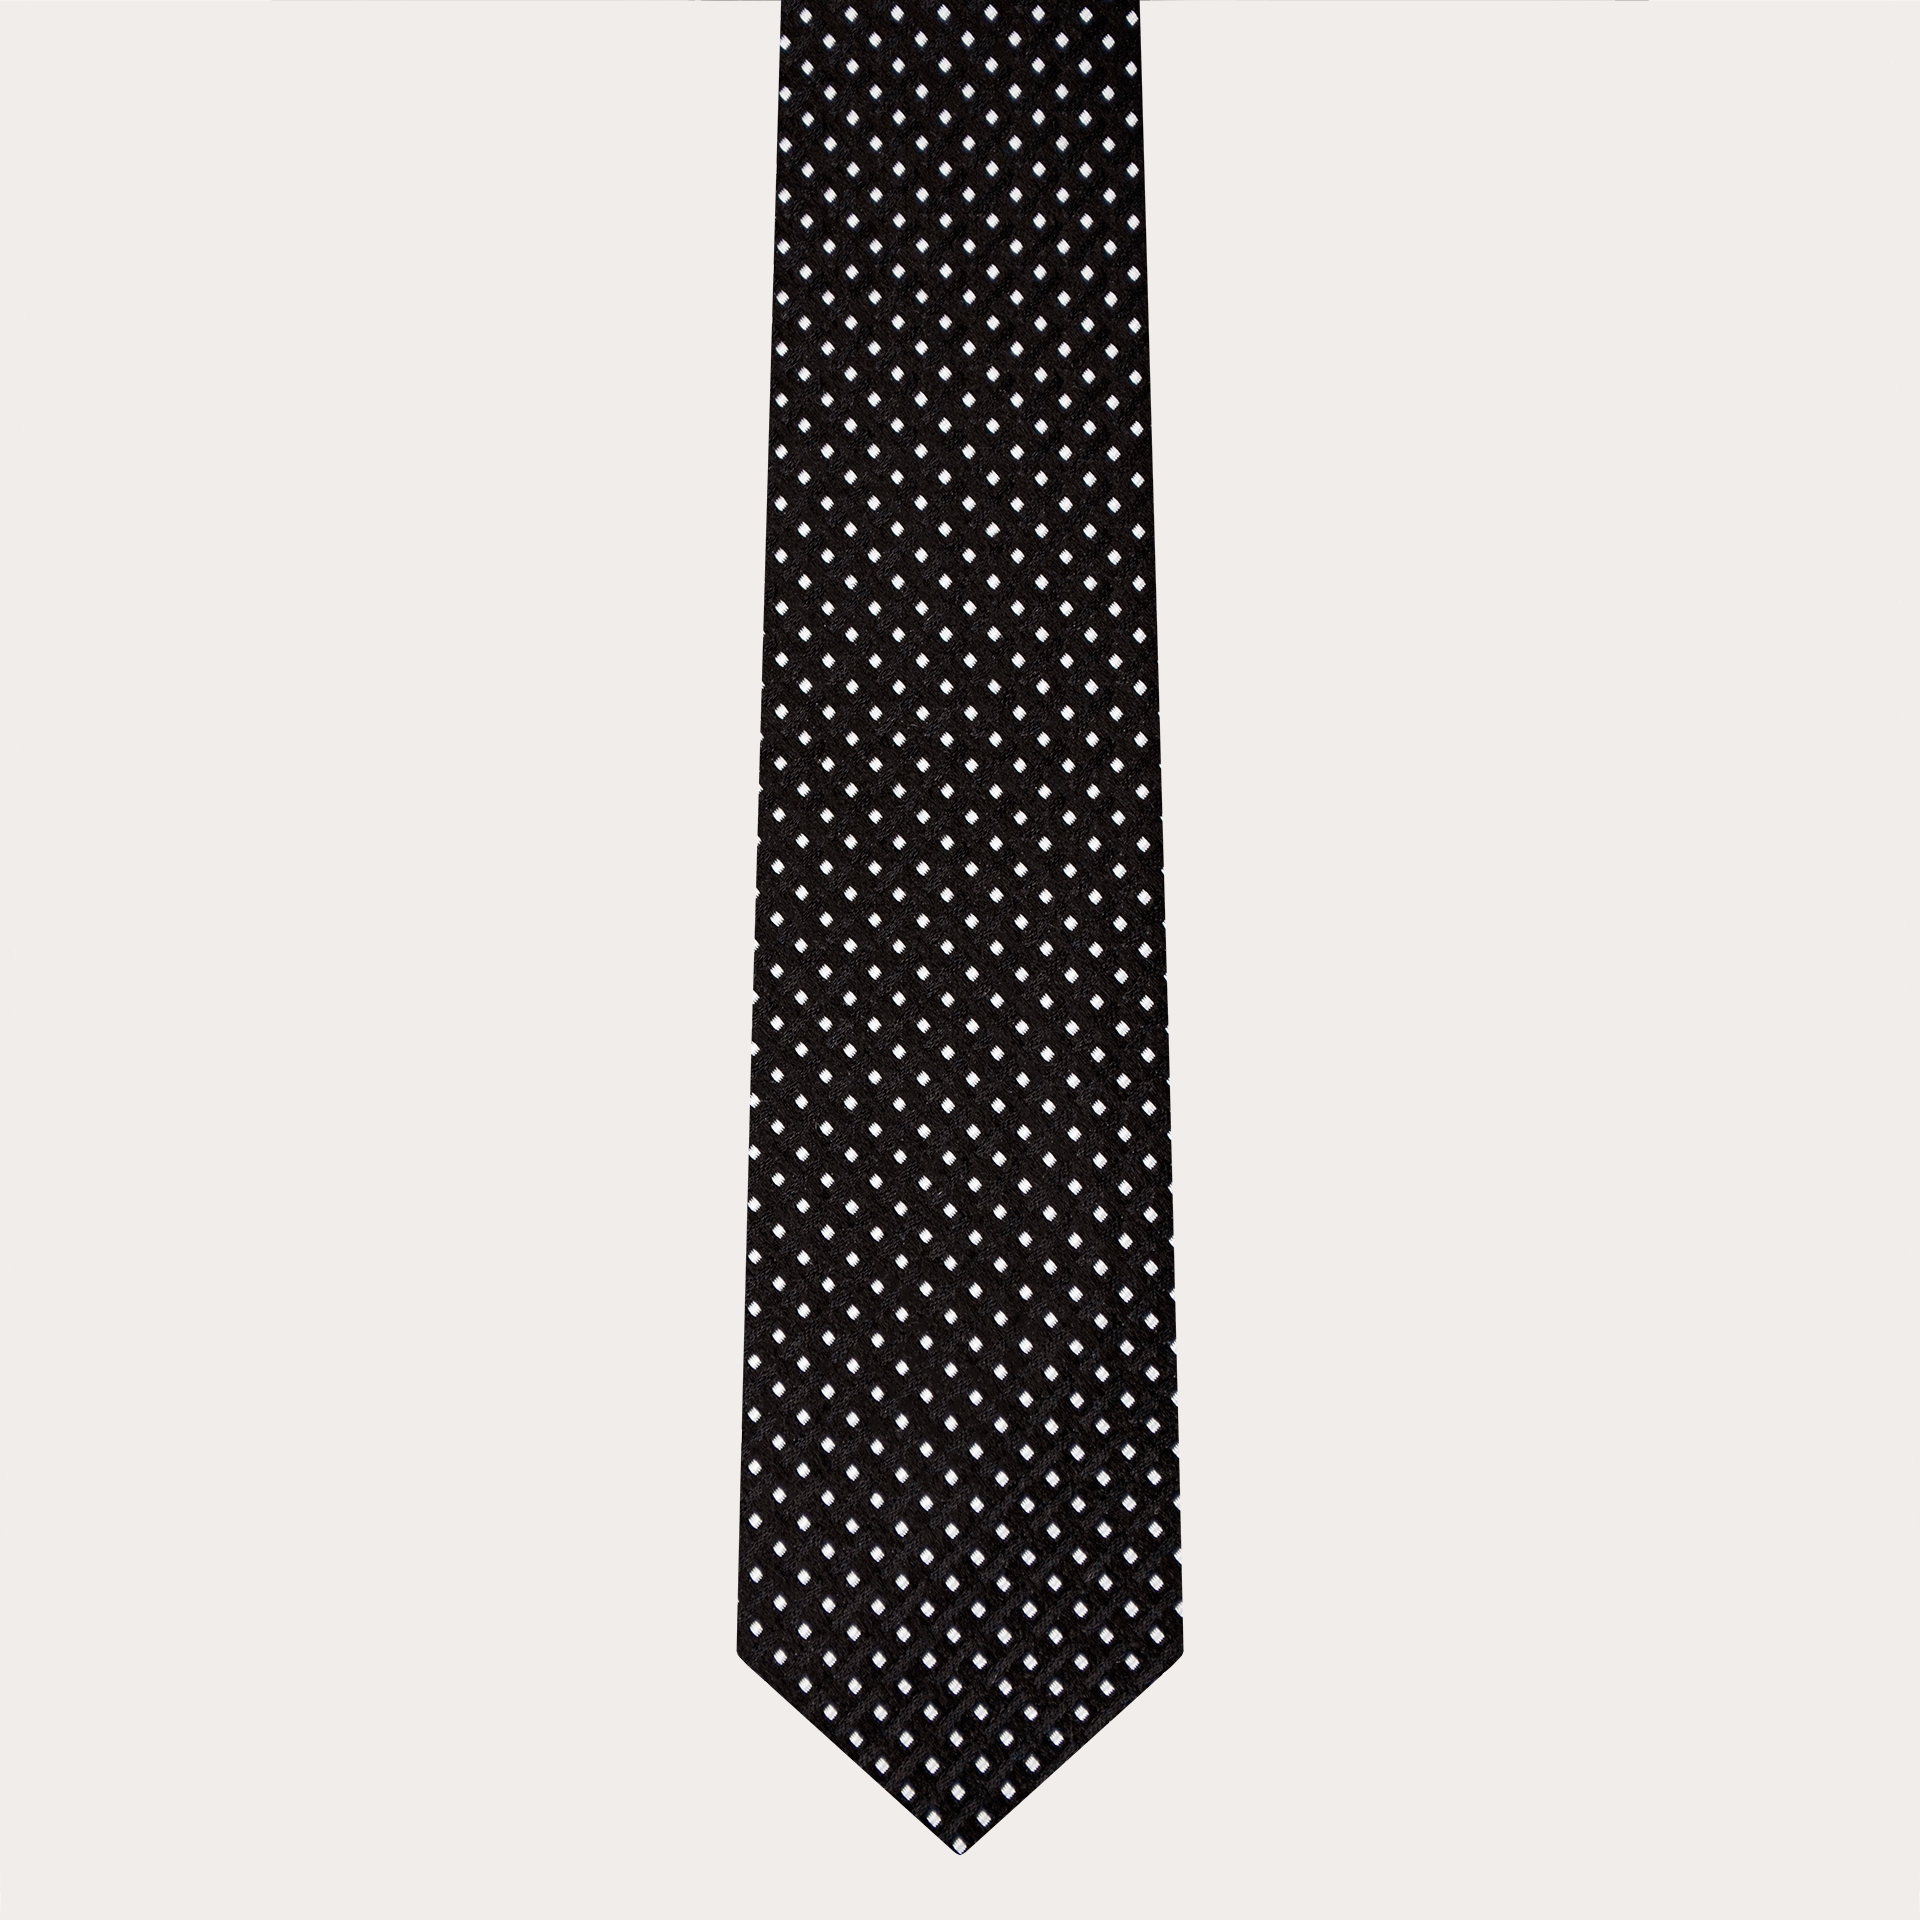 Elegante Krawatte aus Jacquard-Seide, schwarz mit geometrischem Punktmuster